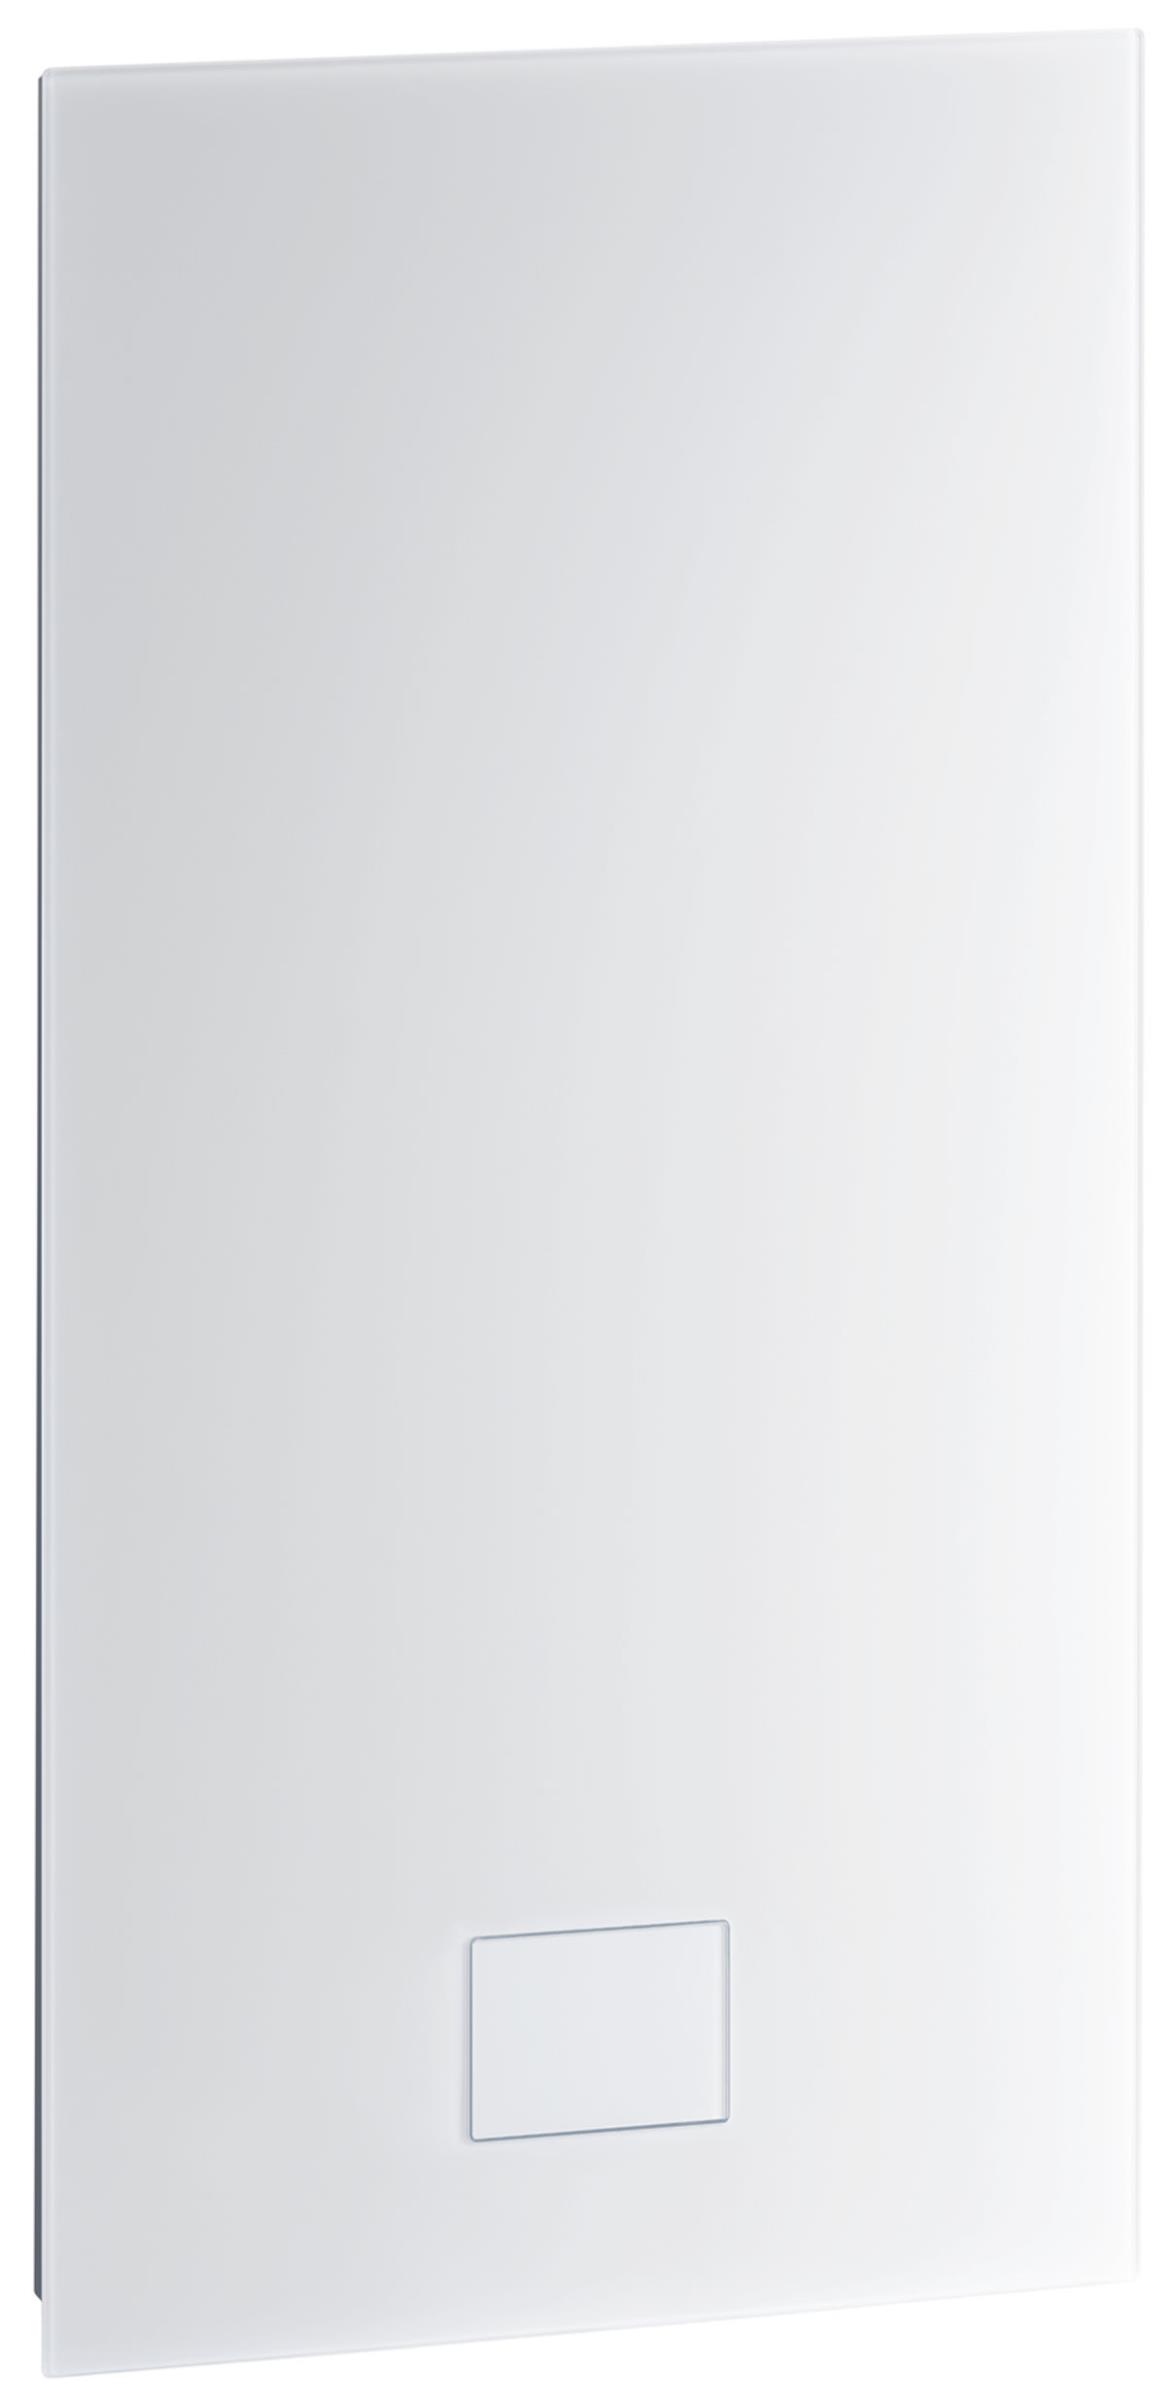 ZEWO LG 75 H Geräteabdeckung Unterputz, vollflächig aus Glas, Frontalansicht, auf weißem Hintergrund